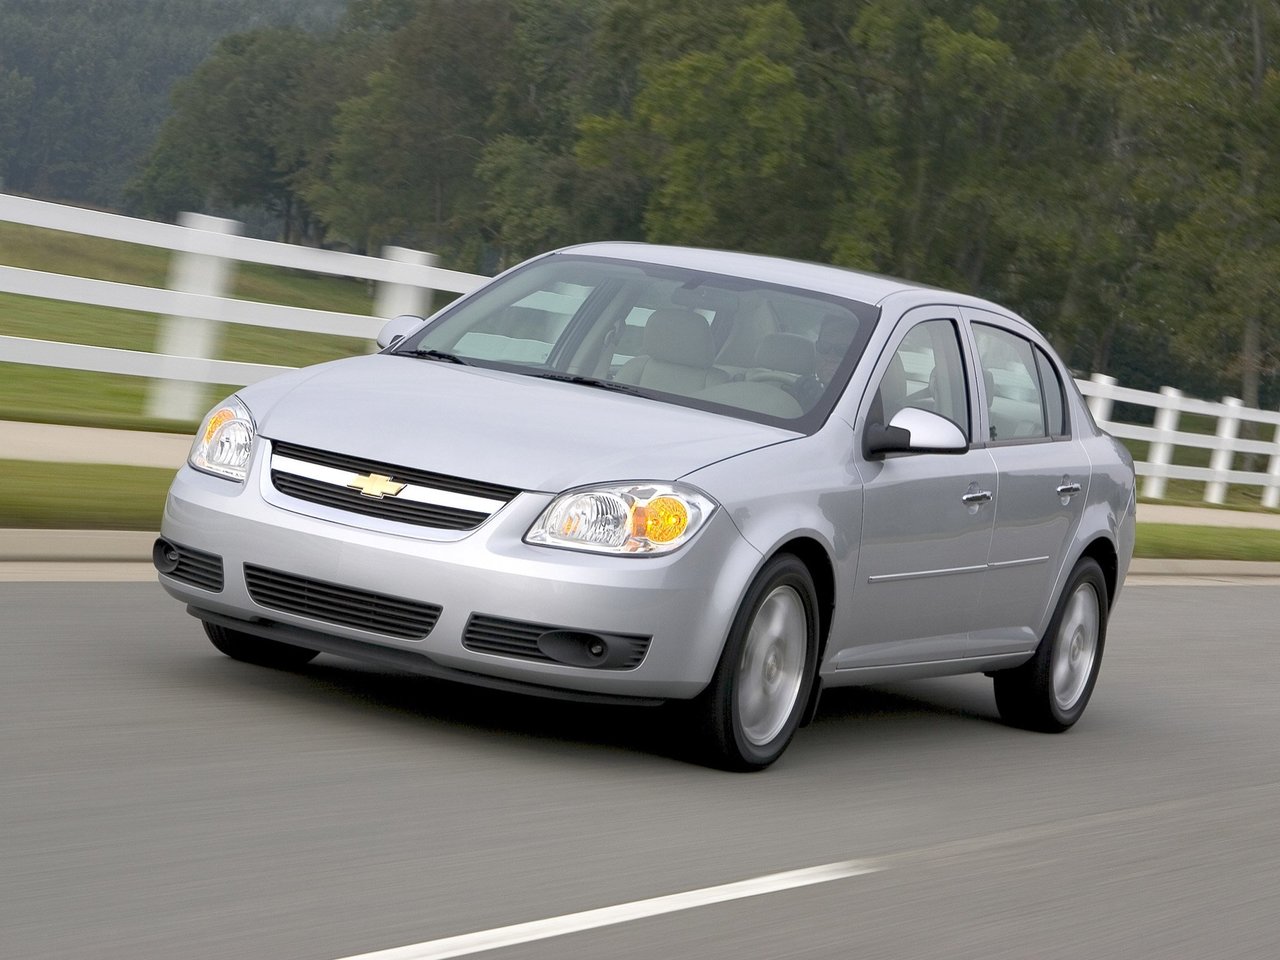 Расход газа двух комплектаций седана Chevrolet Cobalt. Разница стоимости заправки газом и бензином. Автономный пробег до и после установки ГБО.